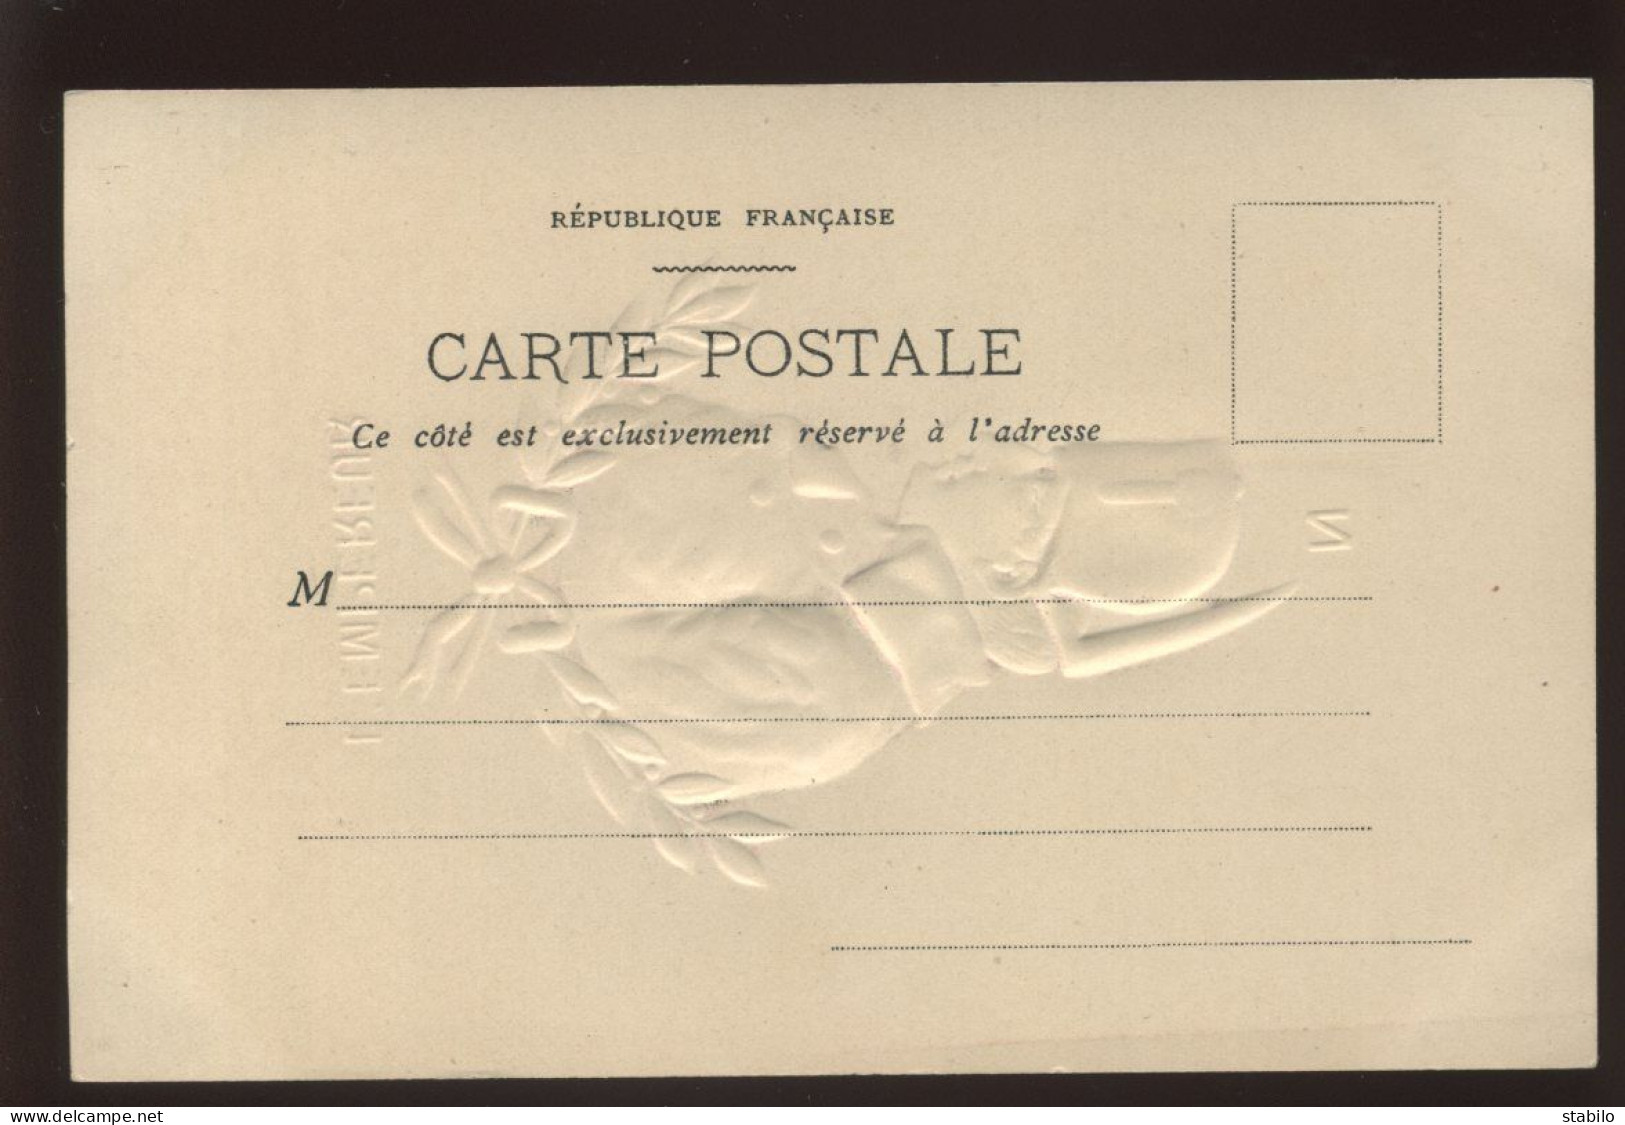 MATIERE - CARTE PORCELAINE GAUFREE - PORTRAIT DE NAPOLEON - HISTOIRE - Cartoline Porcellana